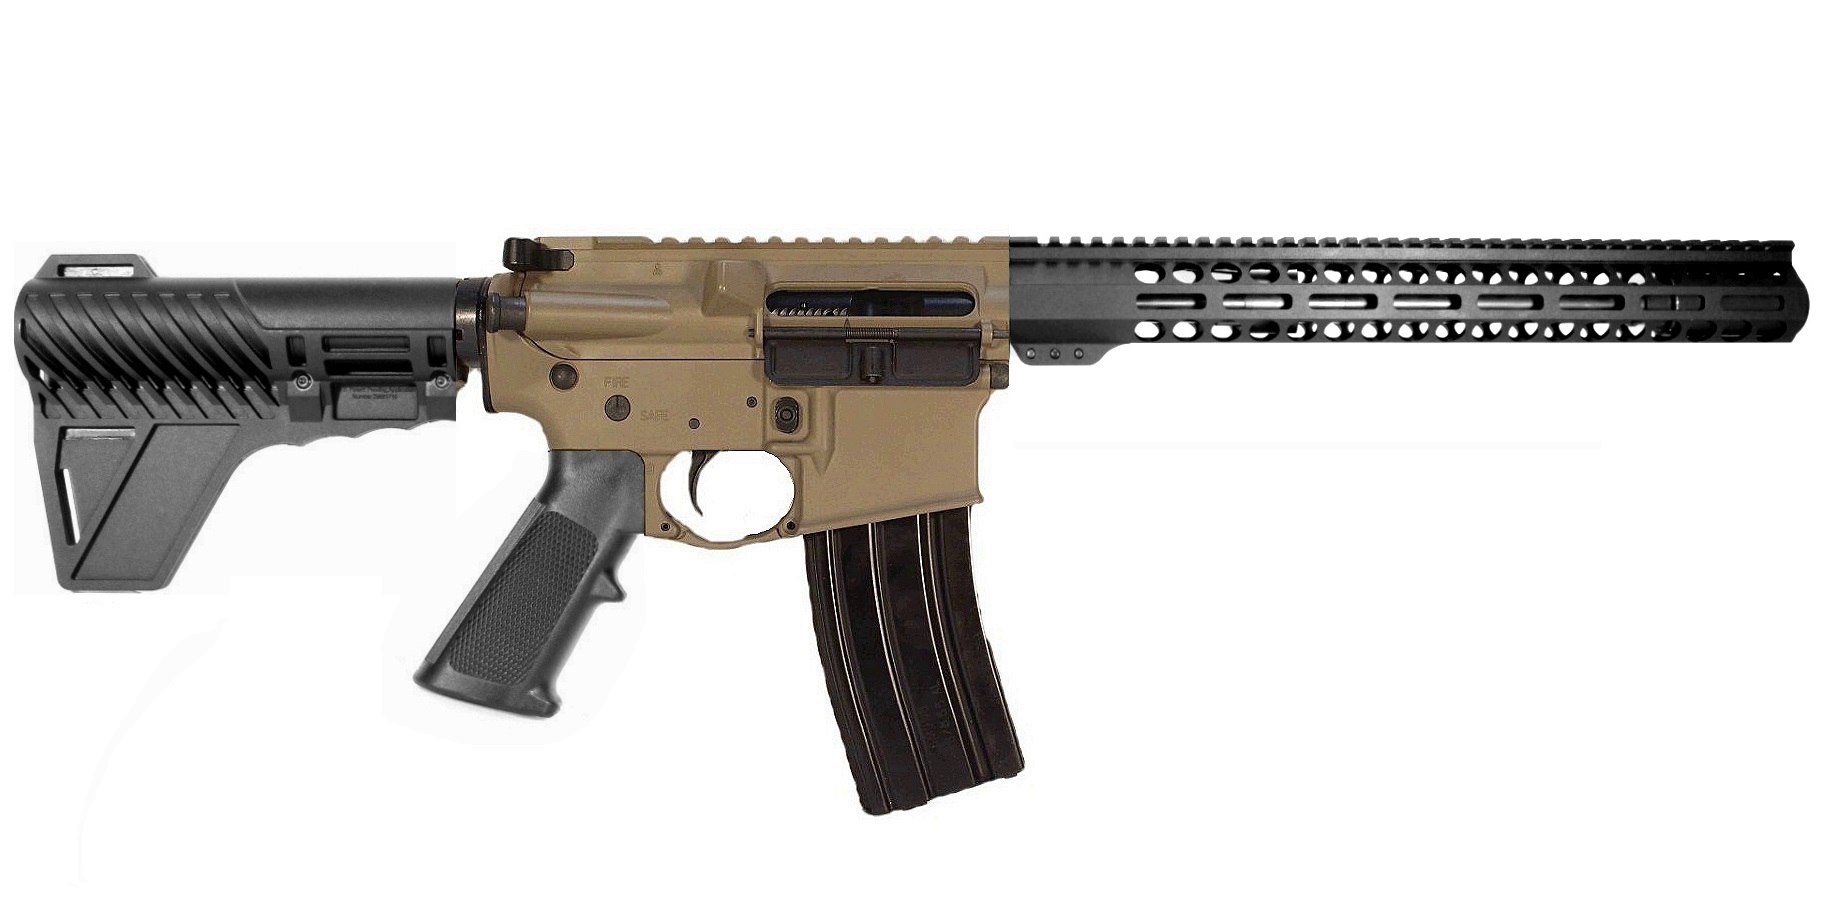 12.5 inch 300BLK AR15 Pistol 2 Tone FDE/BLK